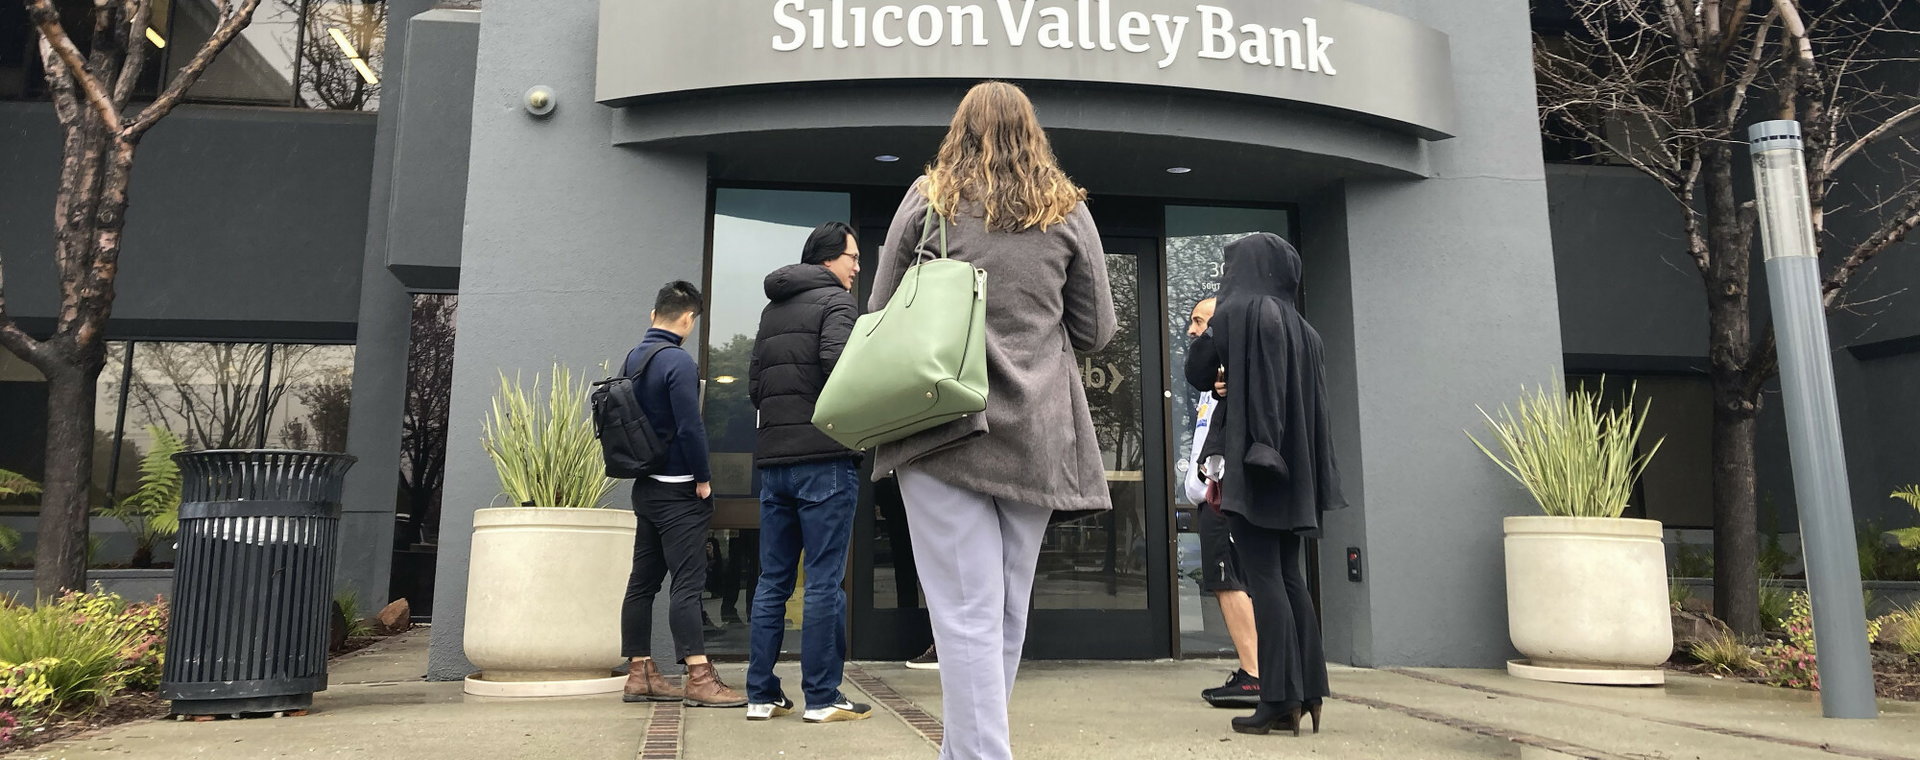 Klienci Silicon Valley Banku przed jego siedzibą w Santa Clara, w Kalifornii